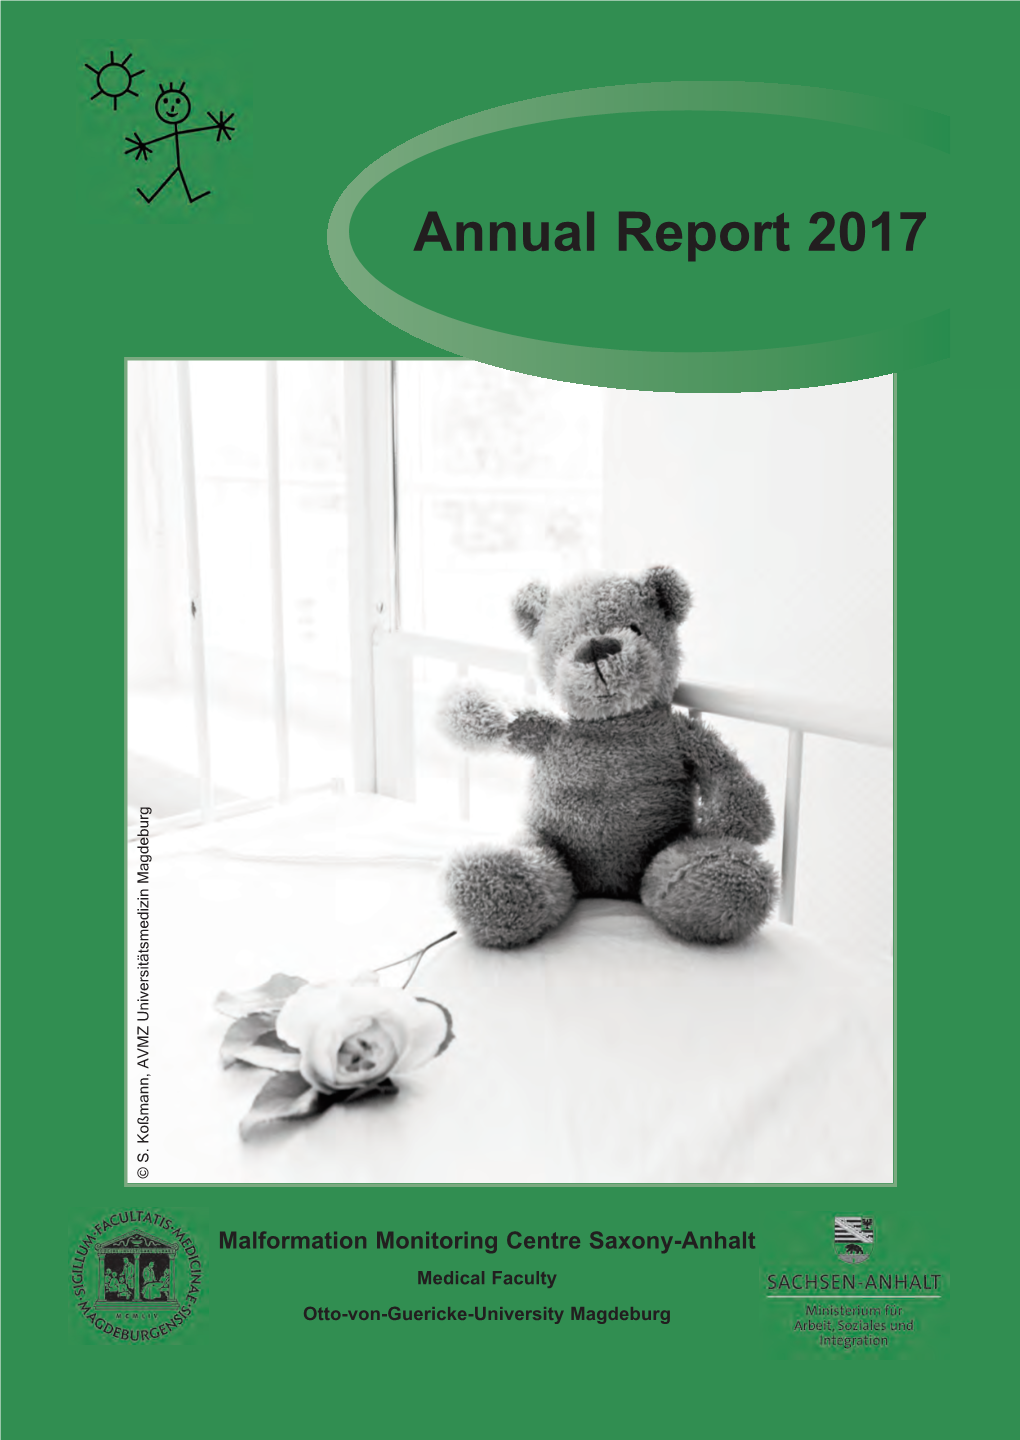 Annual Report 2017 © S